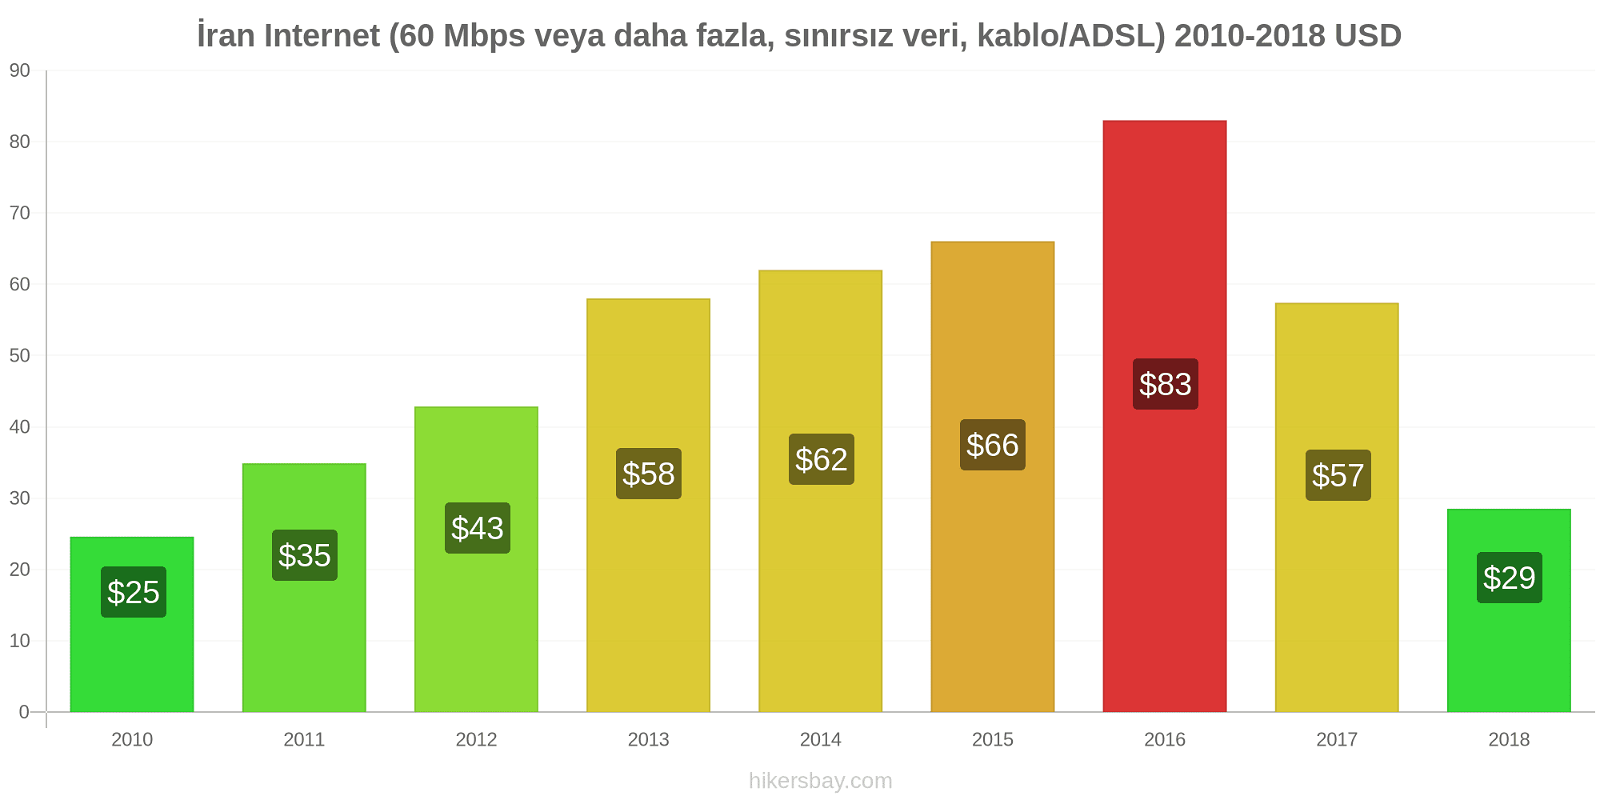 İran fiyat değişiklikleri İnternet (60 Mbps veya daha fazla, sınırsız veri, kablo/ADSL) hikersbay.com